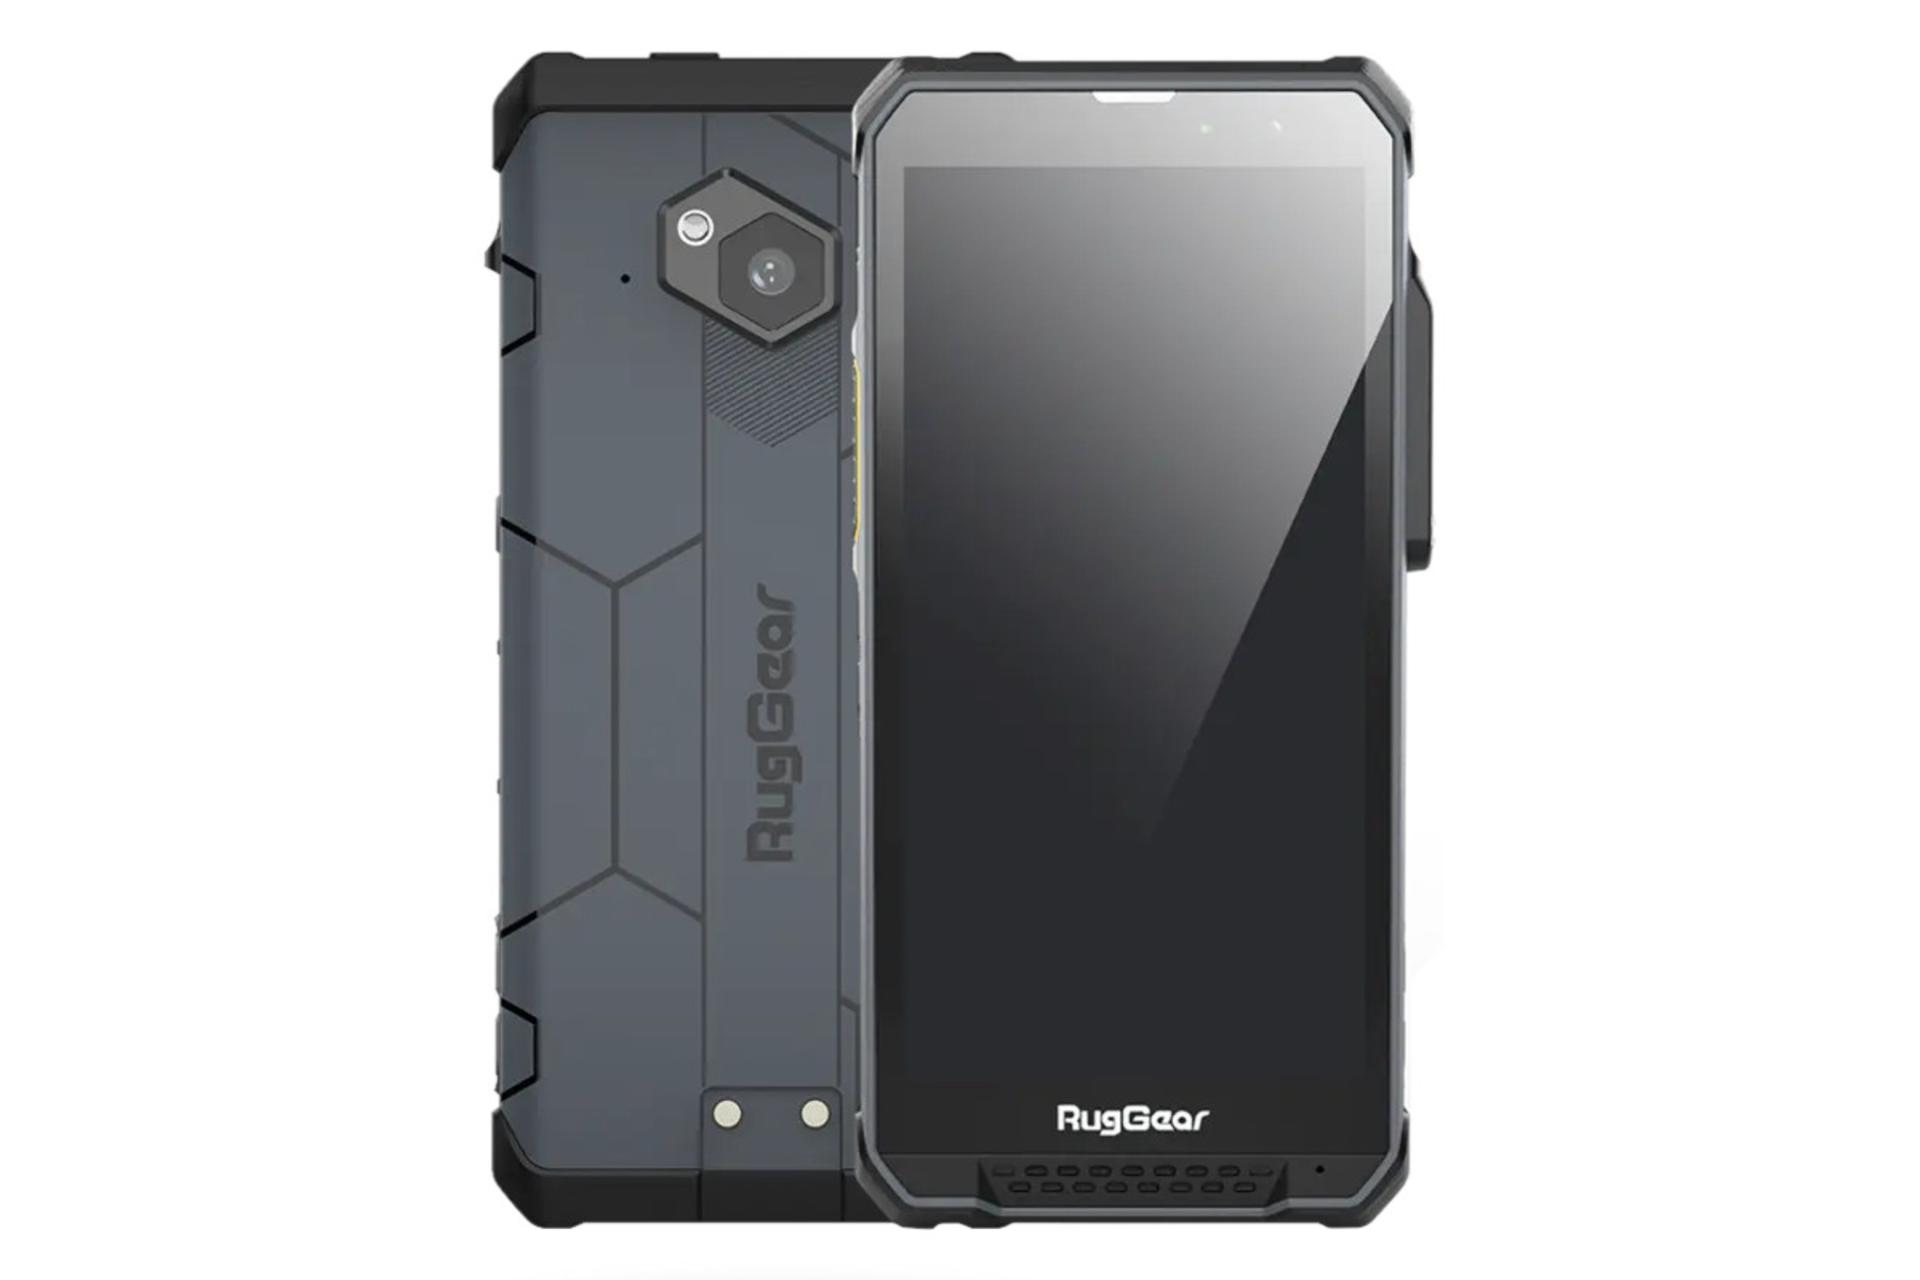 پنل جلو و پشت گوشی موبایل راگ گیر RugGear RG880